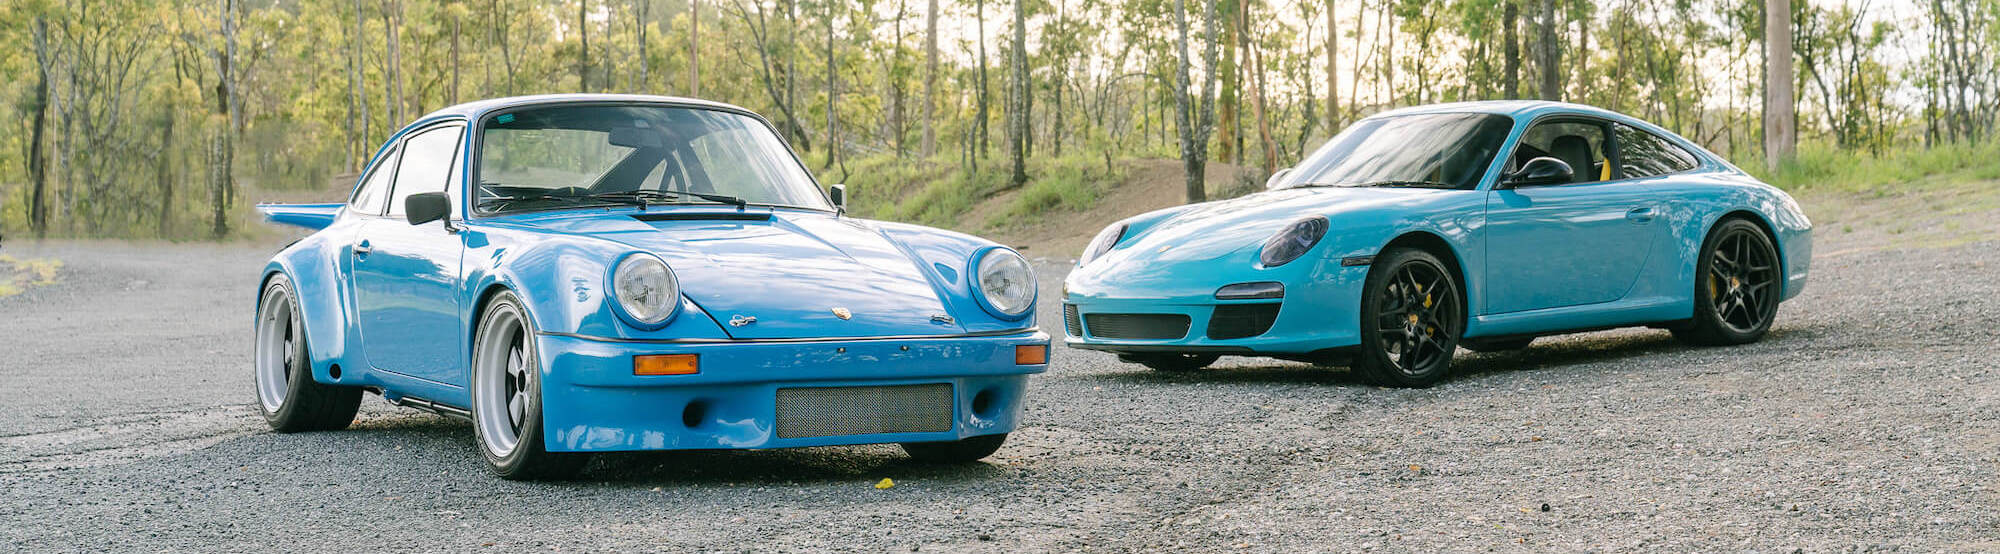 Double Porsche 911